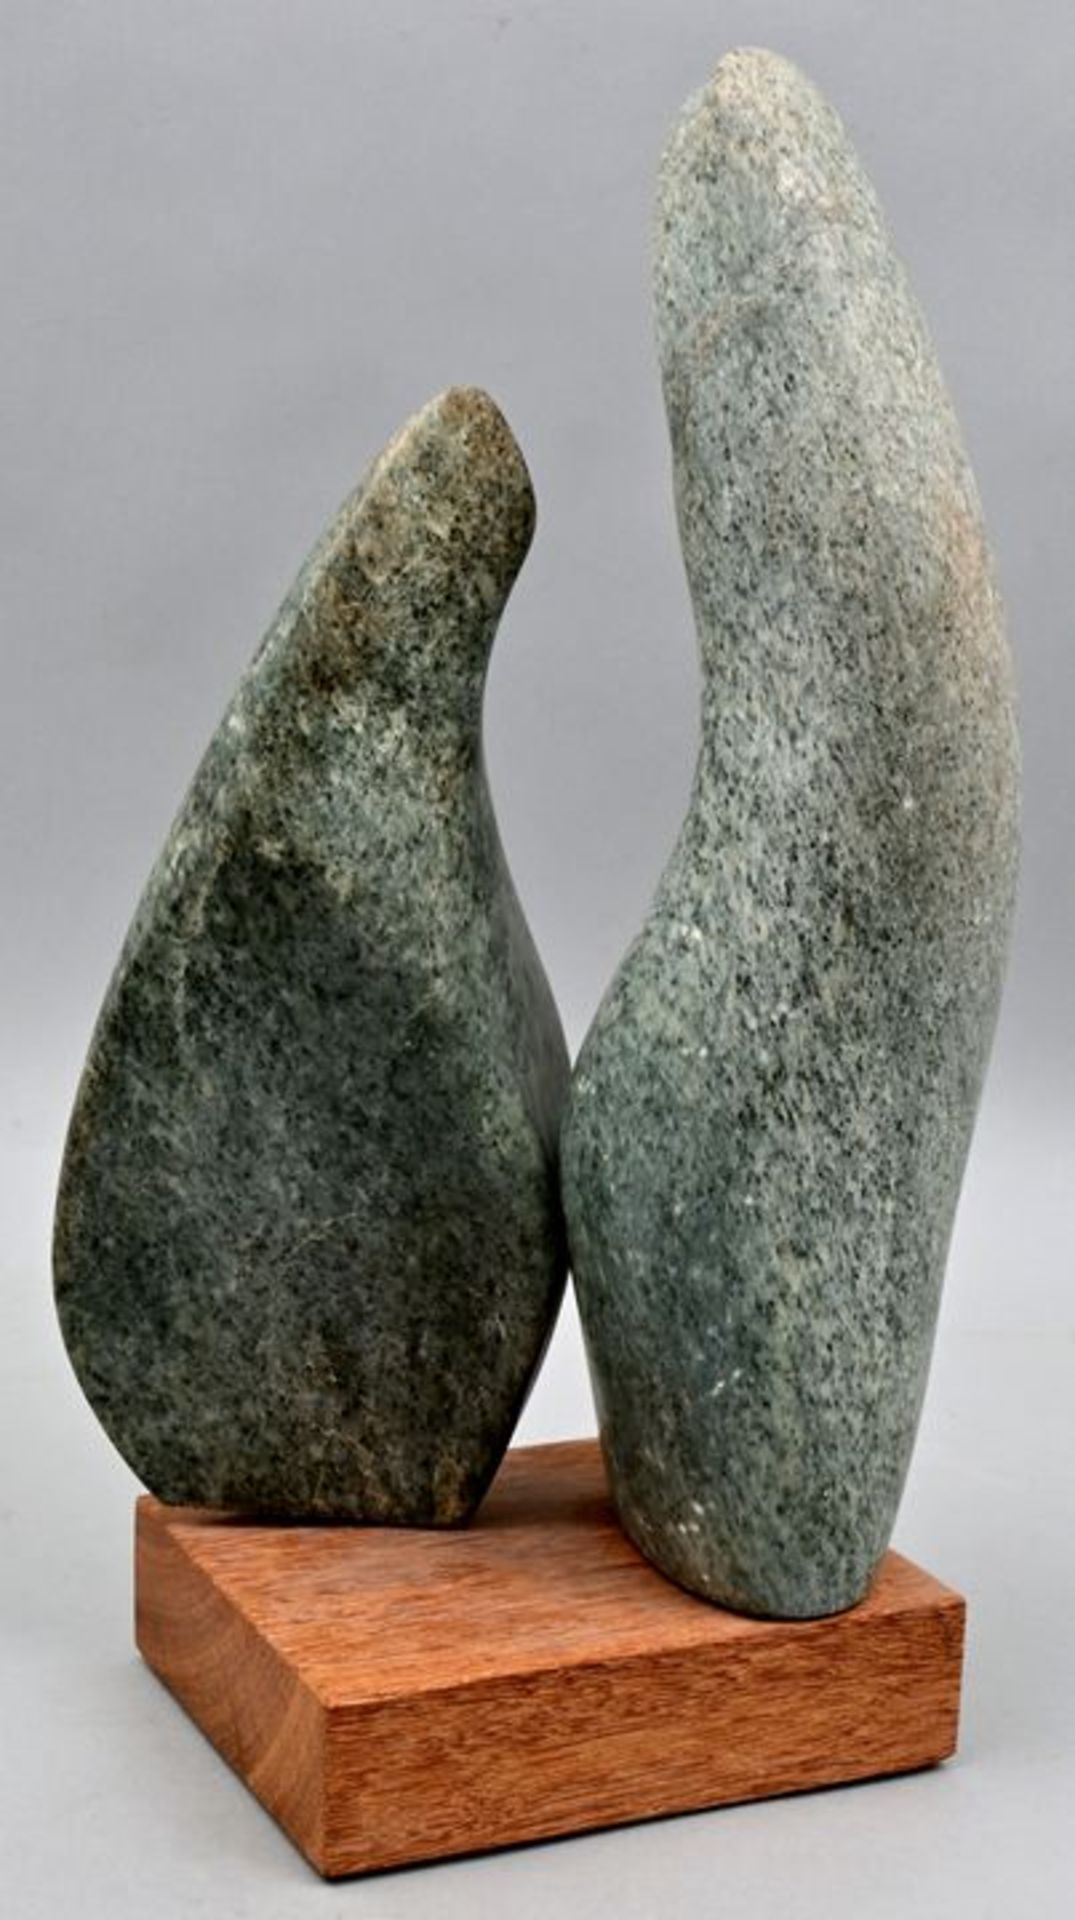 Bangert, Doppelskulptur / Bangert, Twin sculpture